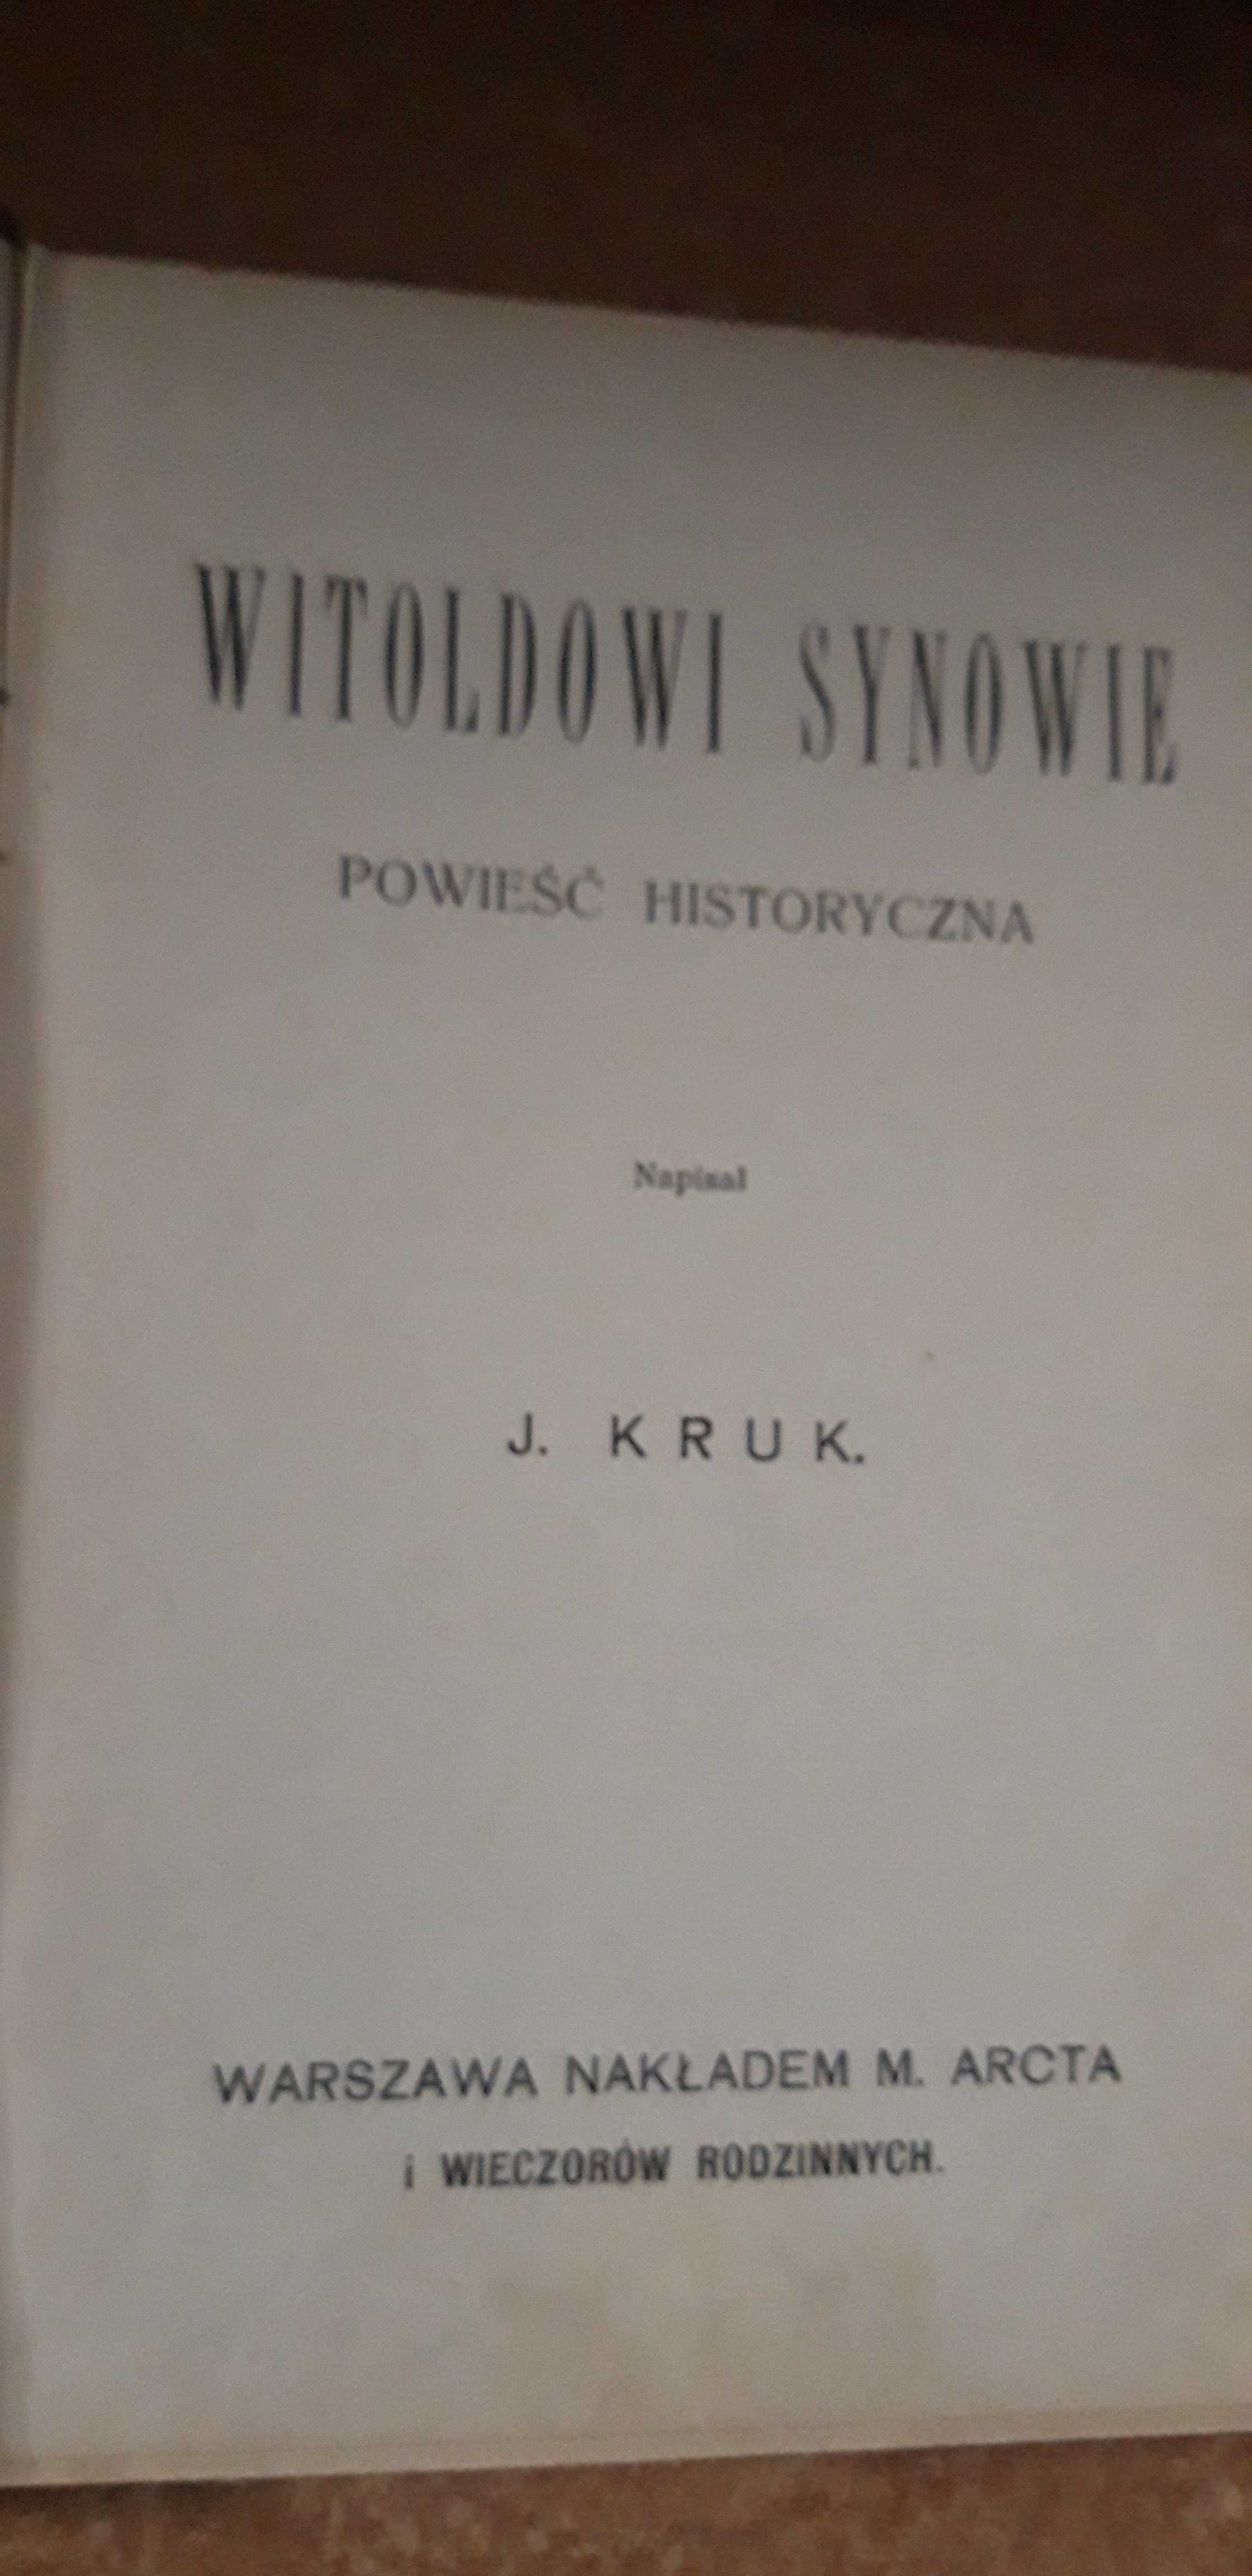 Witoldowi  synowie - J. Kruk - 1911 wyd.1, oprawa, b. rzadkie